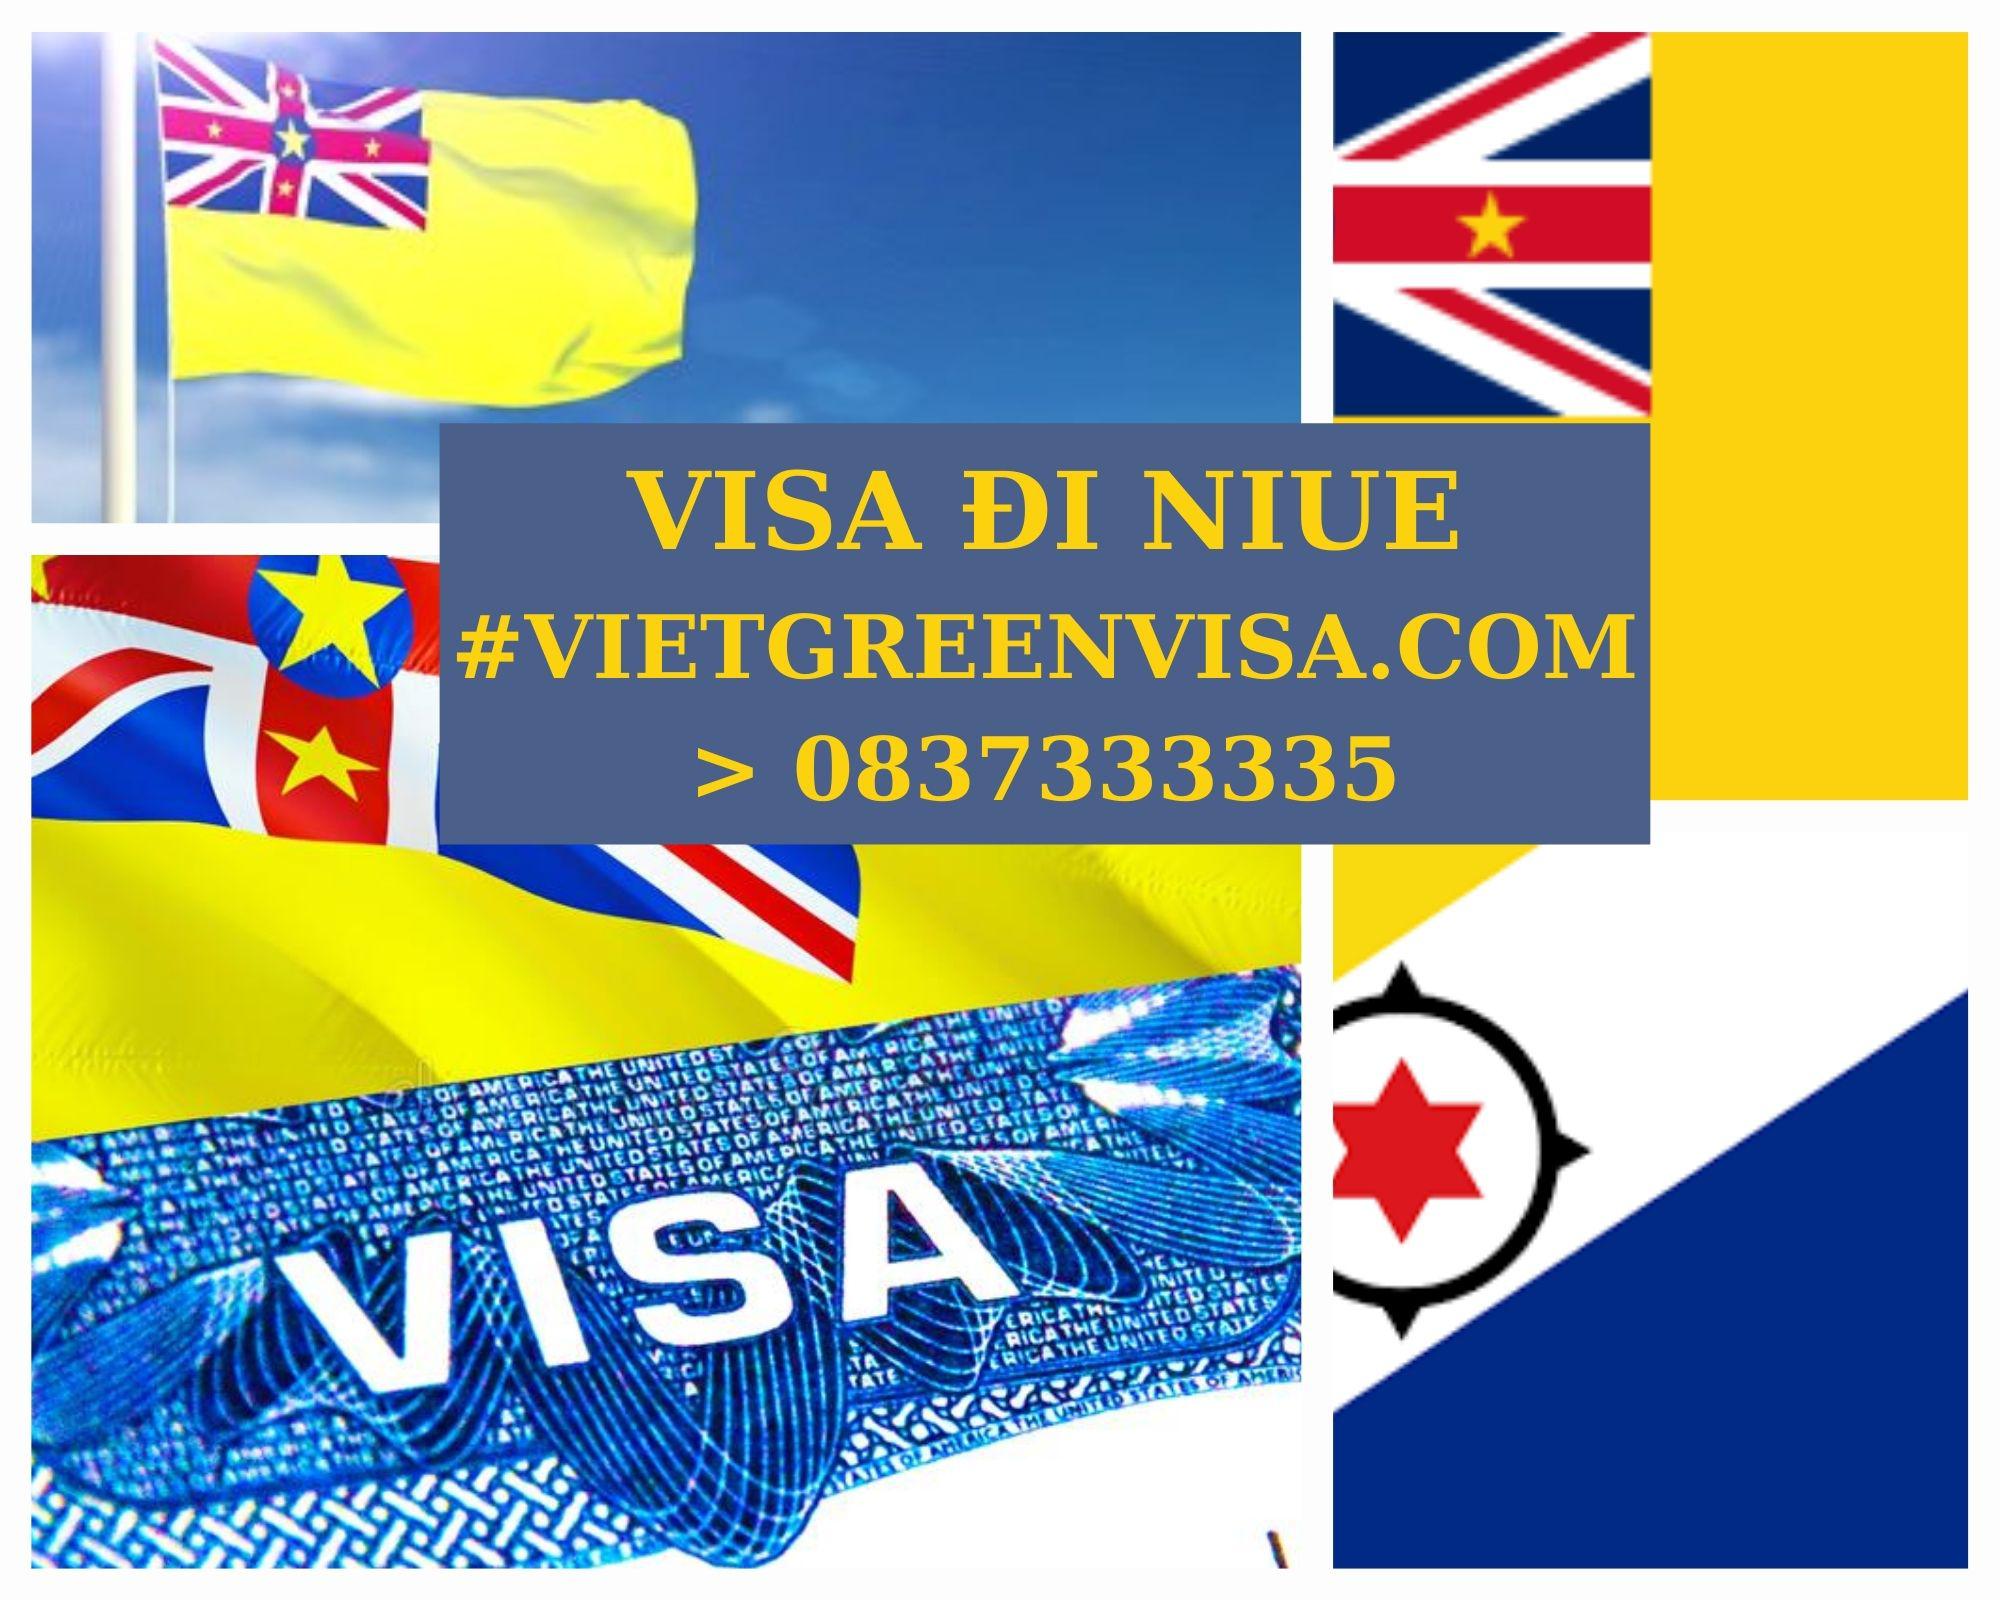 Xin Visa Niue trọn gói tại Hà Nội, Hồ Chí Minh